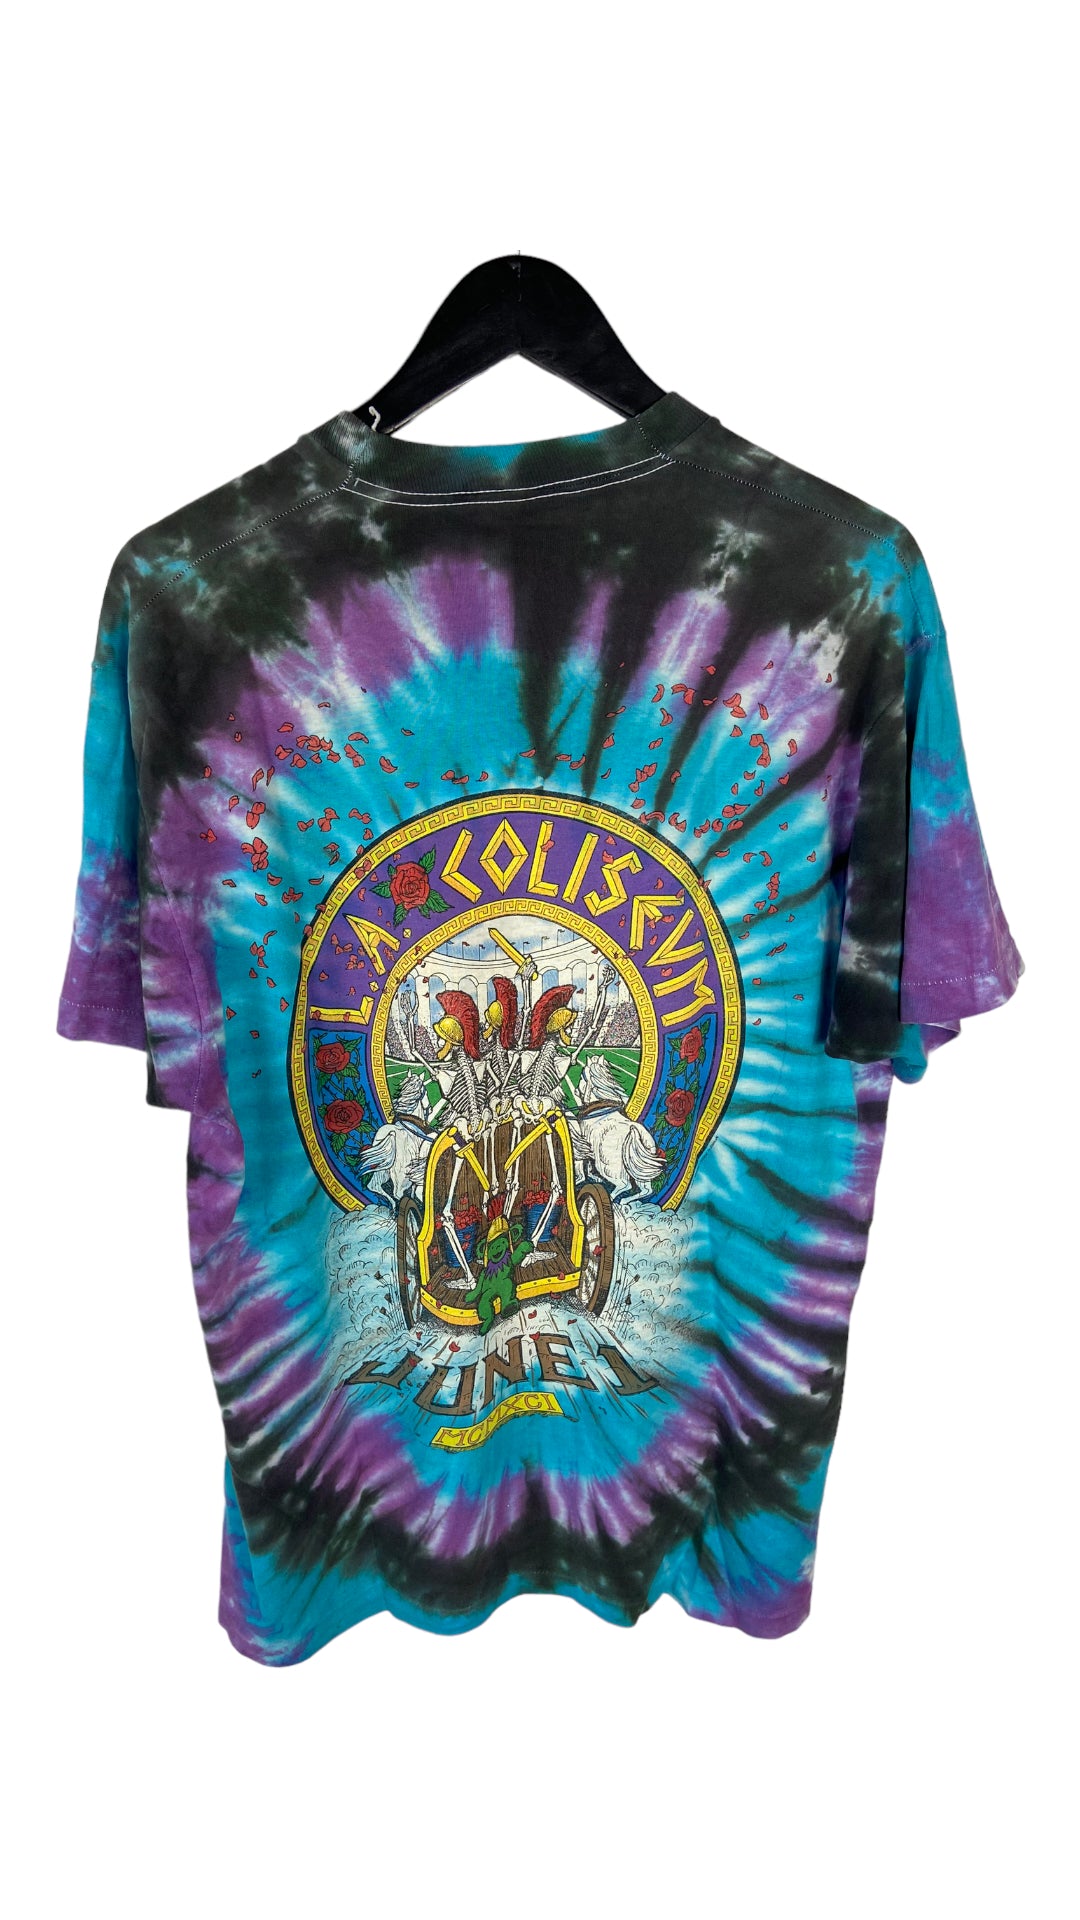 VTG 1991 Grateful Dead L.A Coliseum Tye Dye Tee Sz L